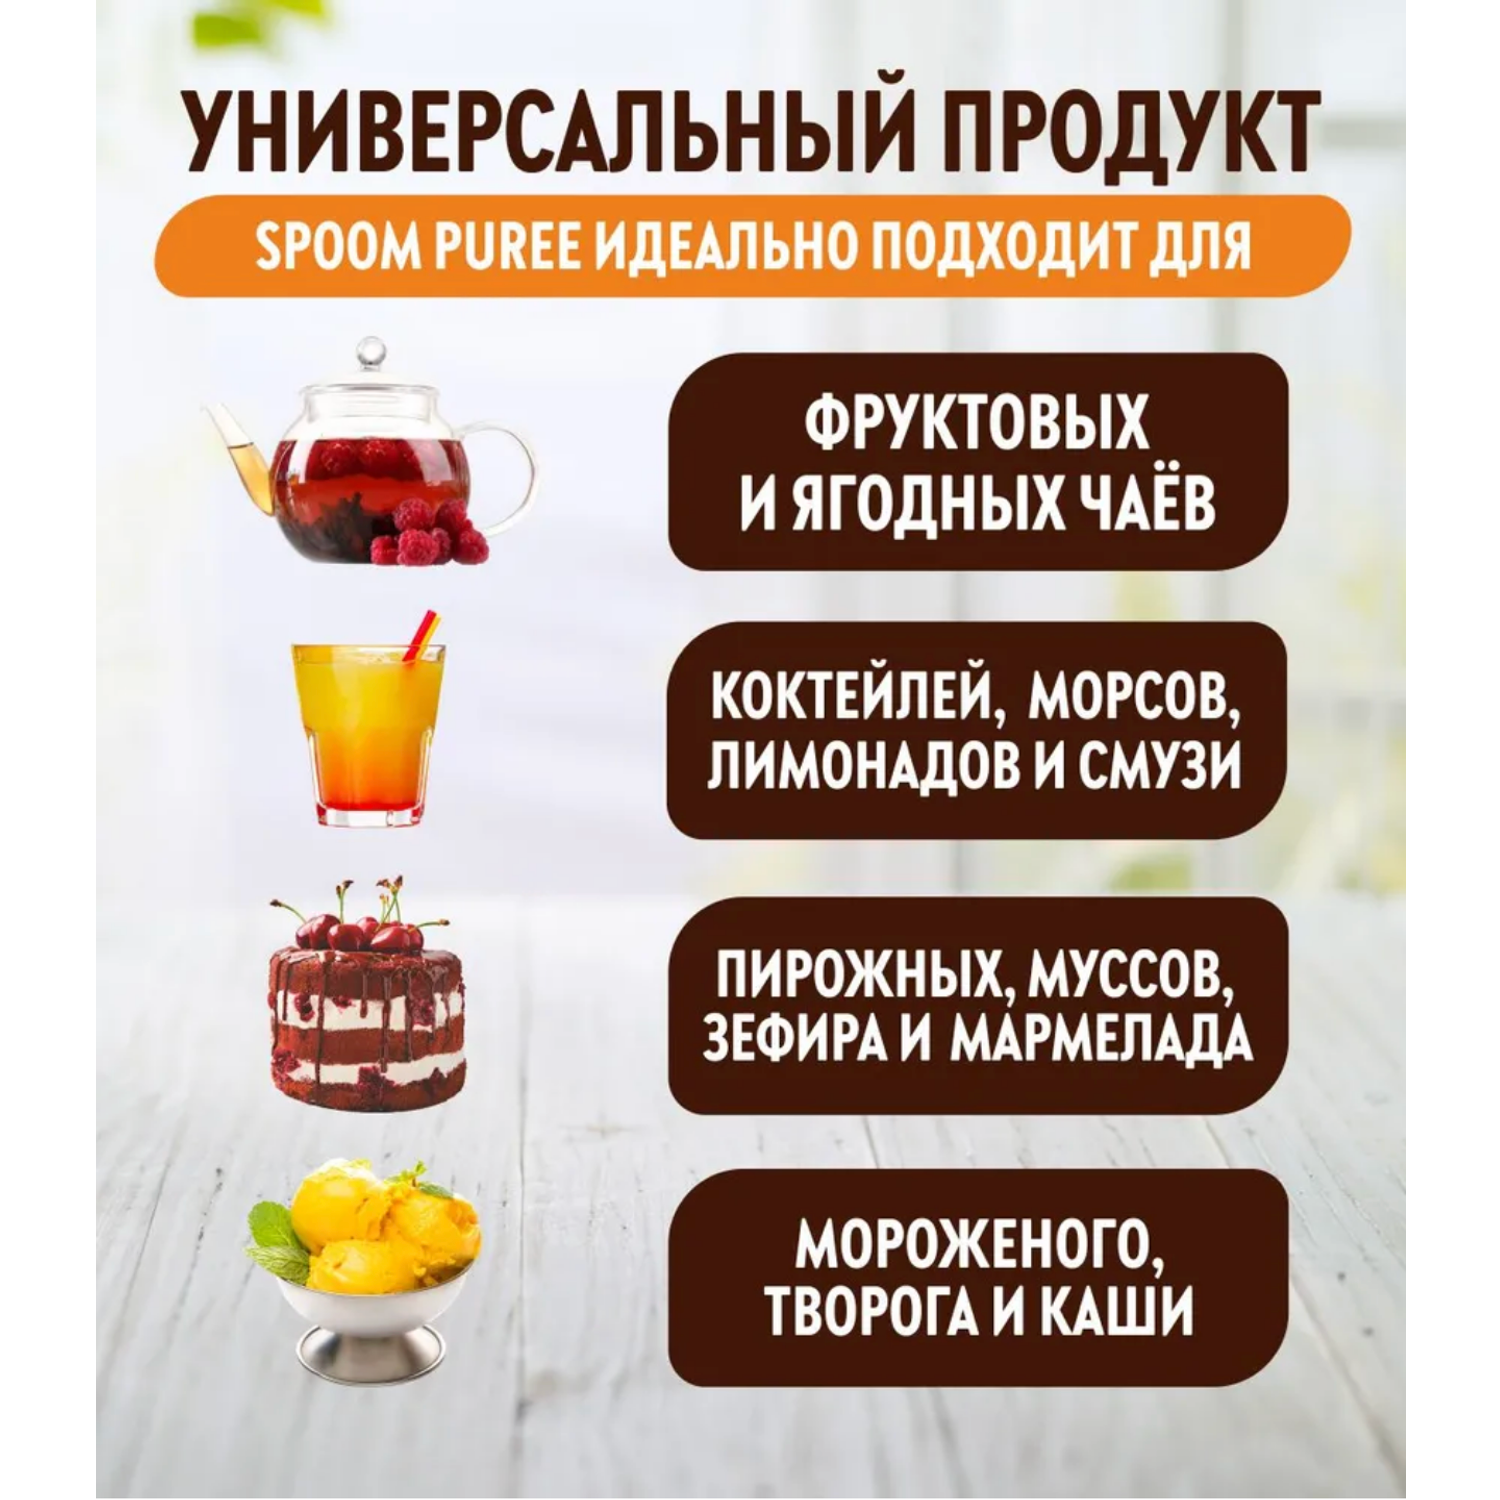 Натуральный концентрат SPOOM PUREE Ежевика 1кг основа для приготовления напитков и десертов - фото 2